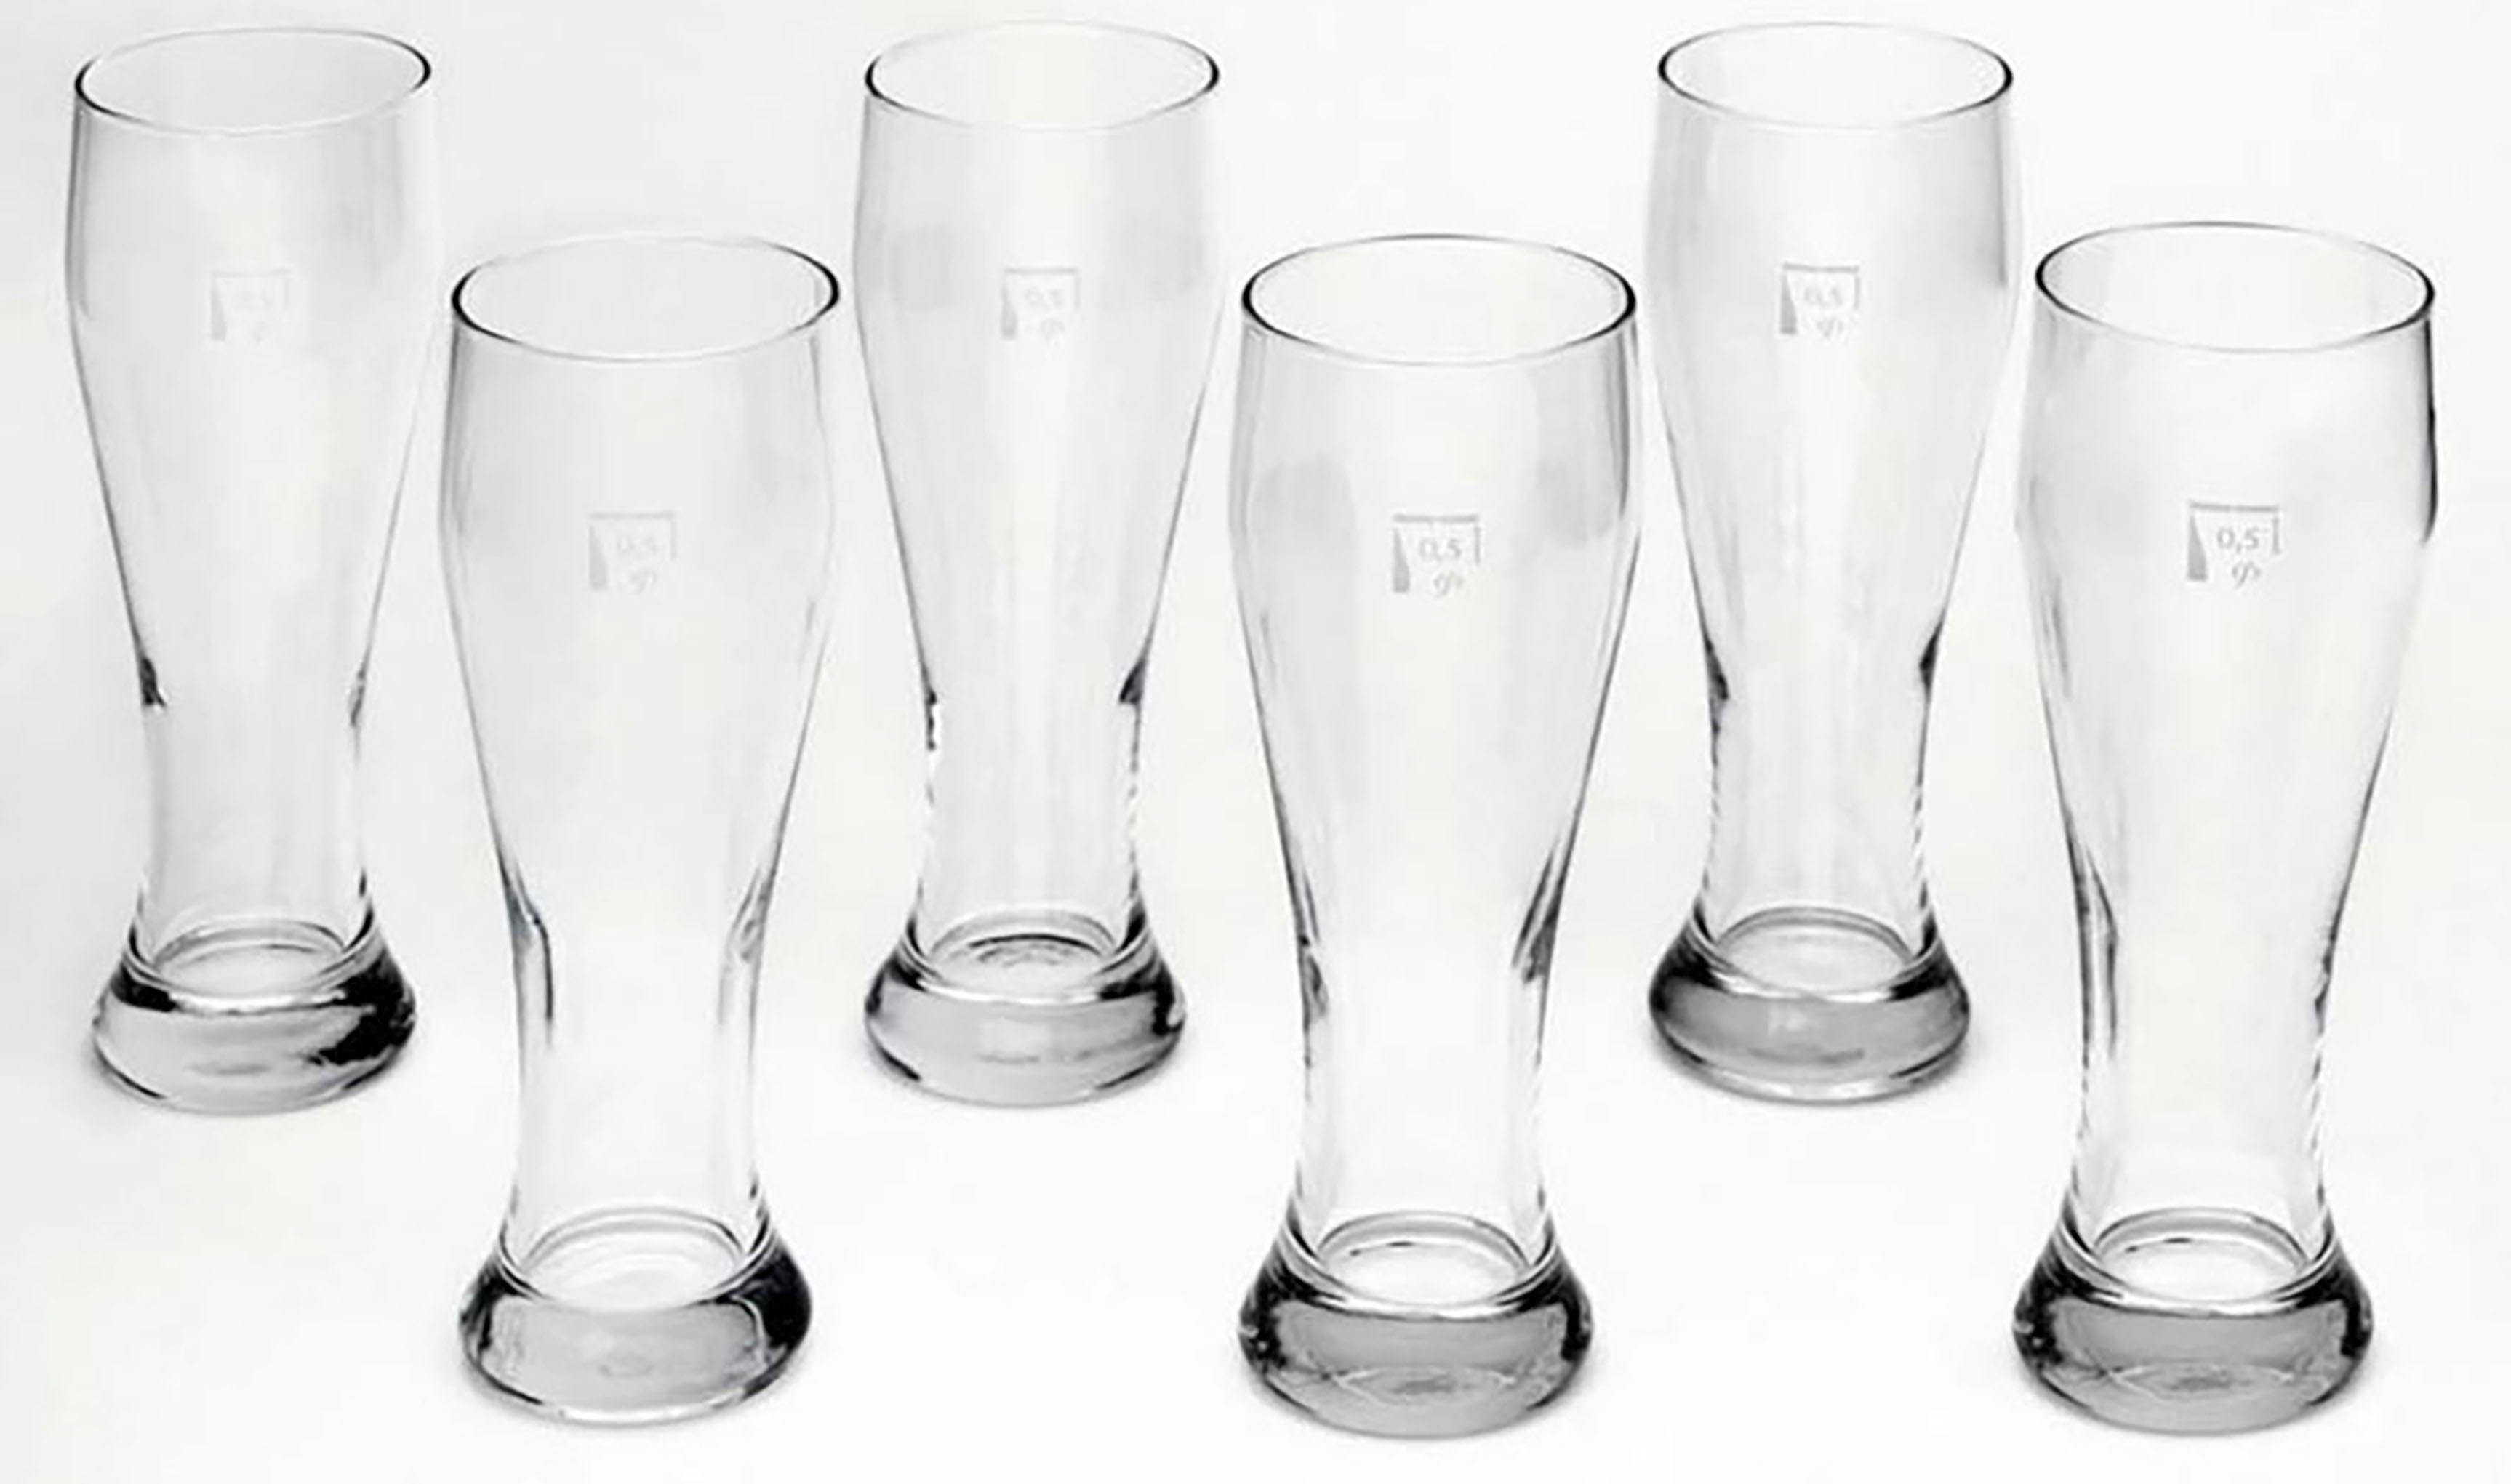 van Well Bierglas Weizenbierglas, Glas, 0,5 L, geeicht, spülmaschinenfest, Gastronomiequalität, 6-tlg.